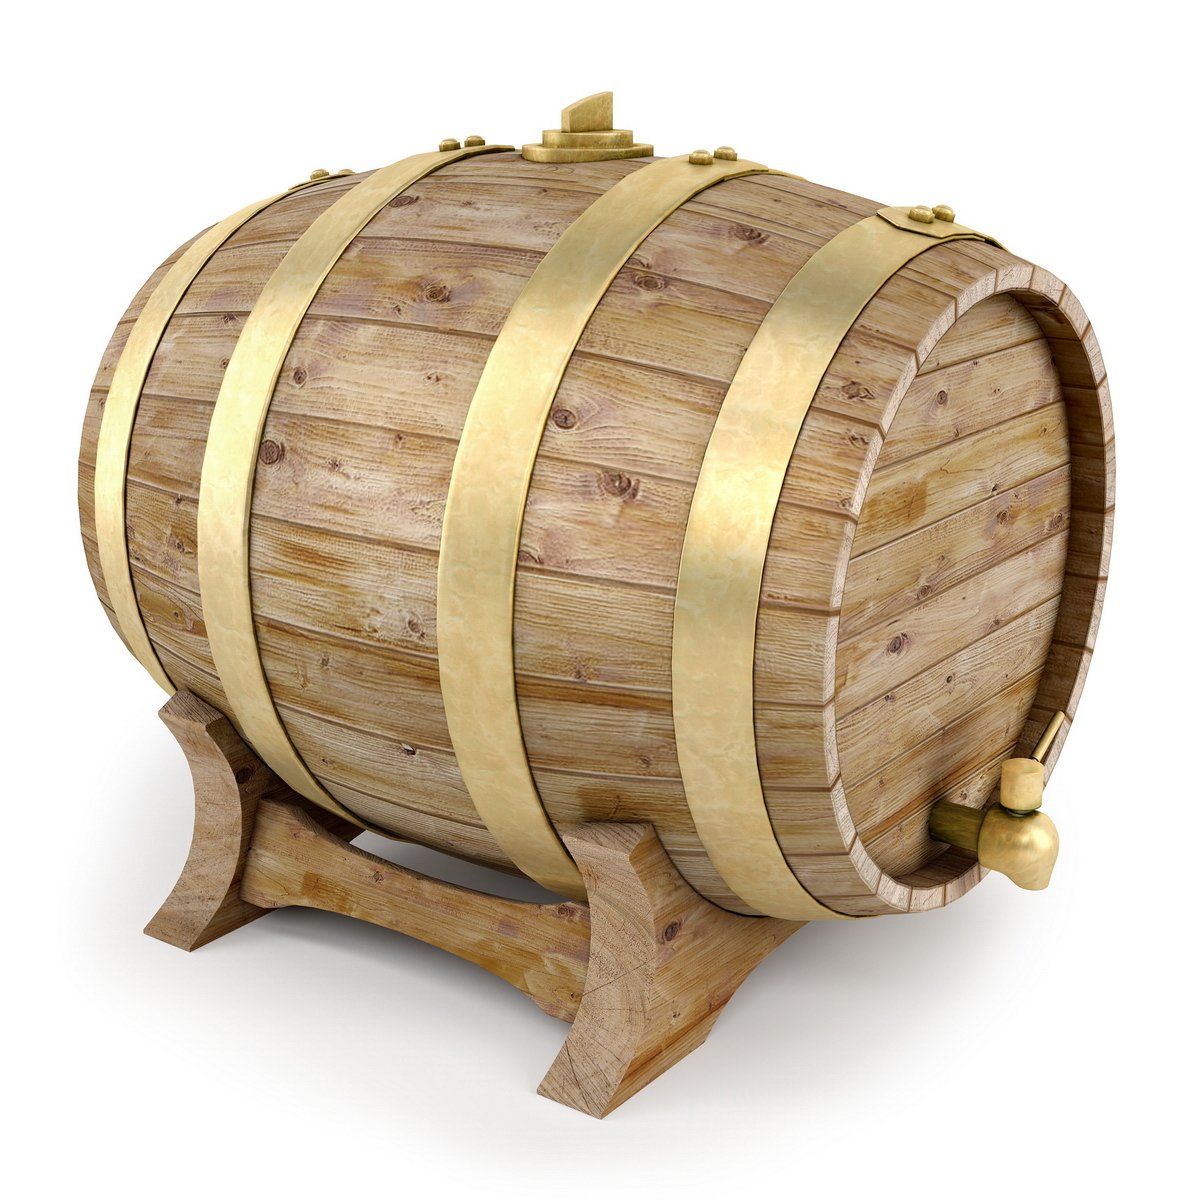 Thùng gỗ sồi ngâm rượu nhập khẩu nguyên chiếc.